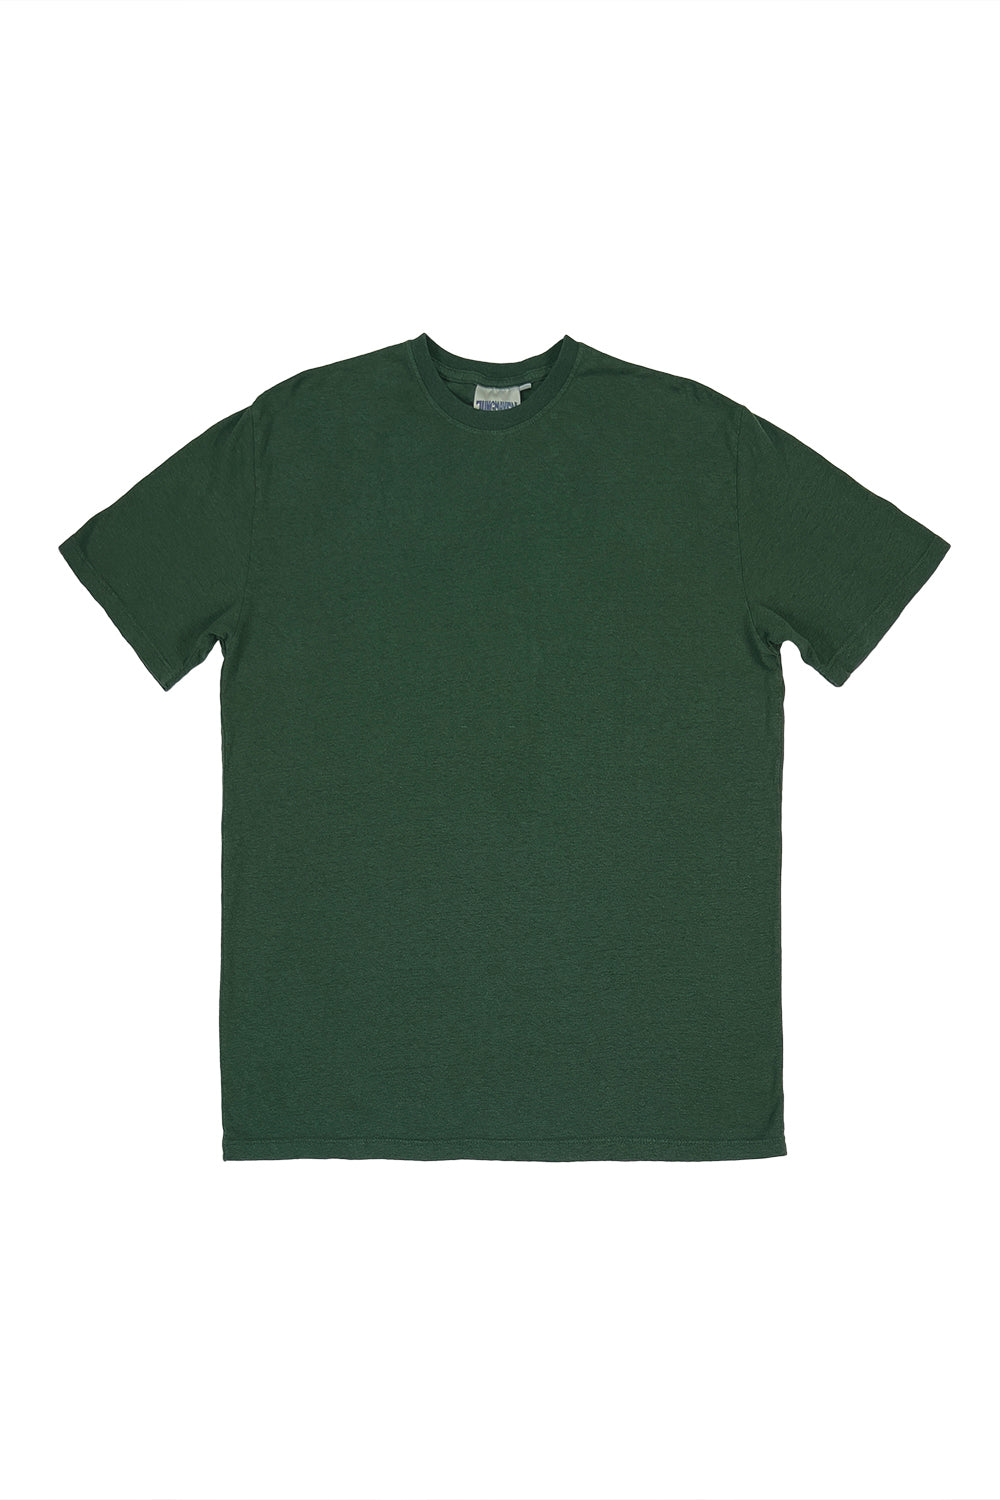 dark green t shirt template